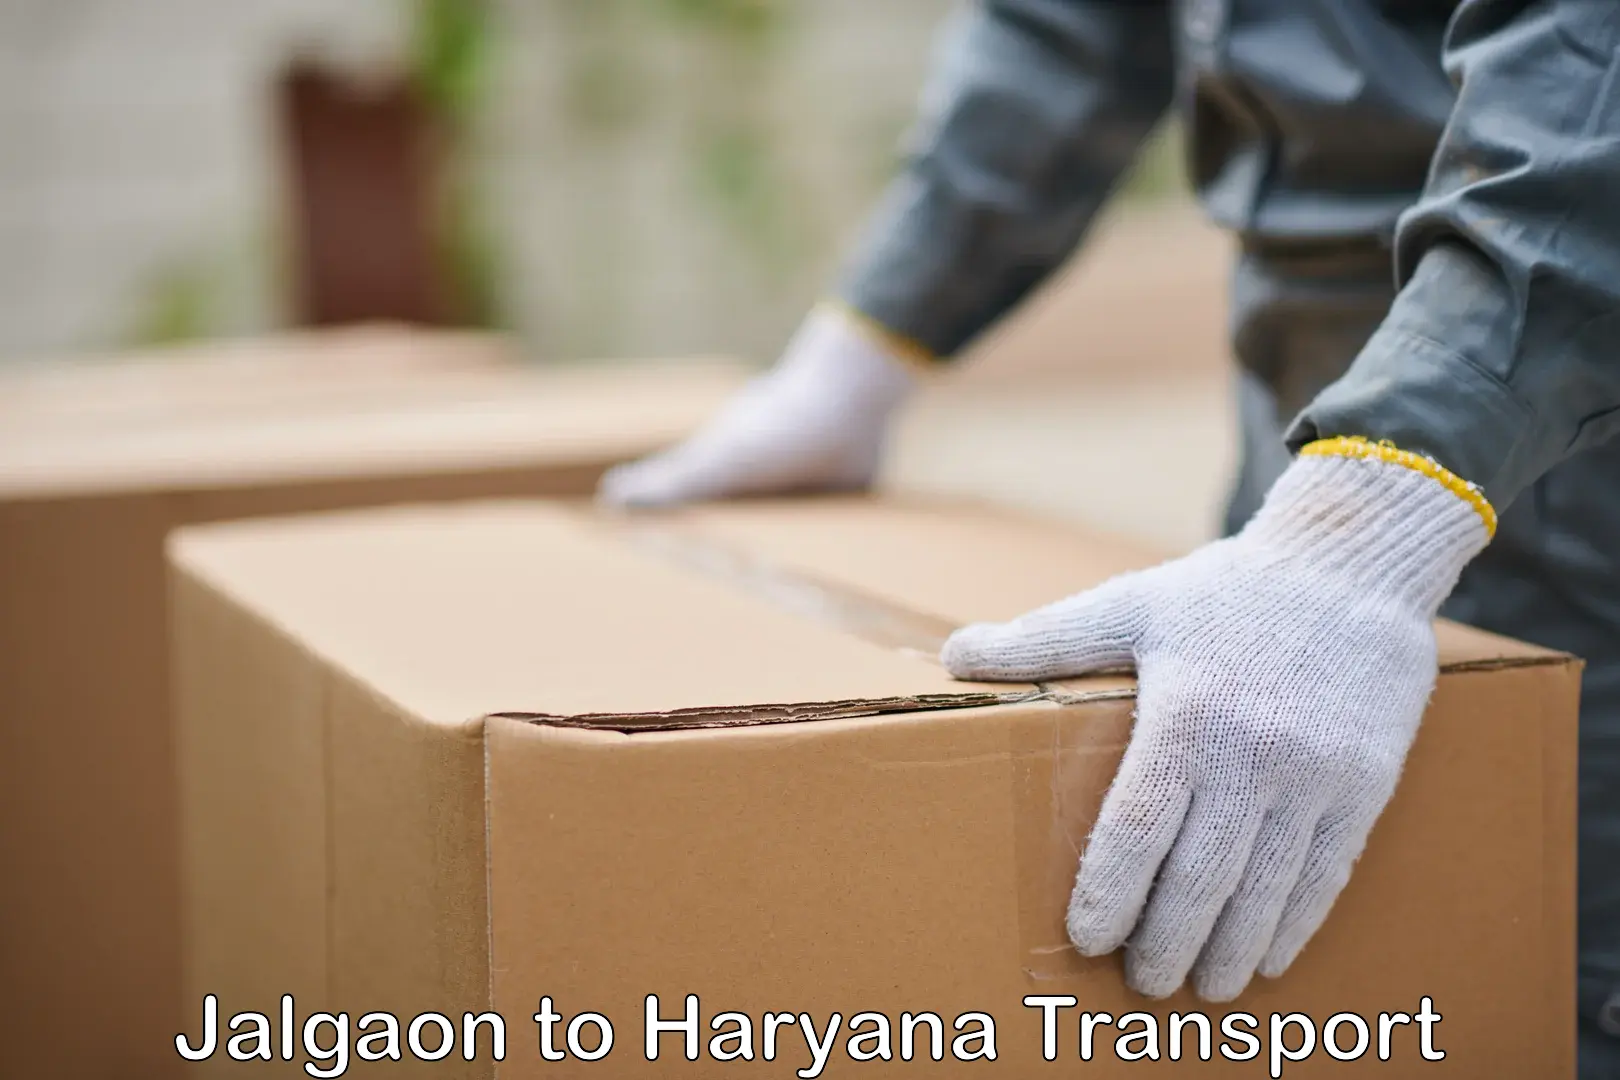 Daily transport service Jalgaon to Haryana